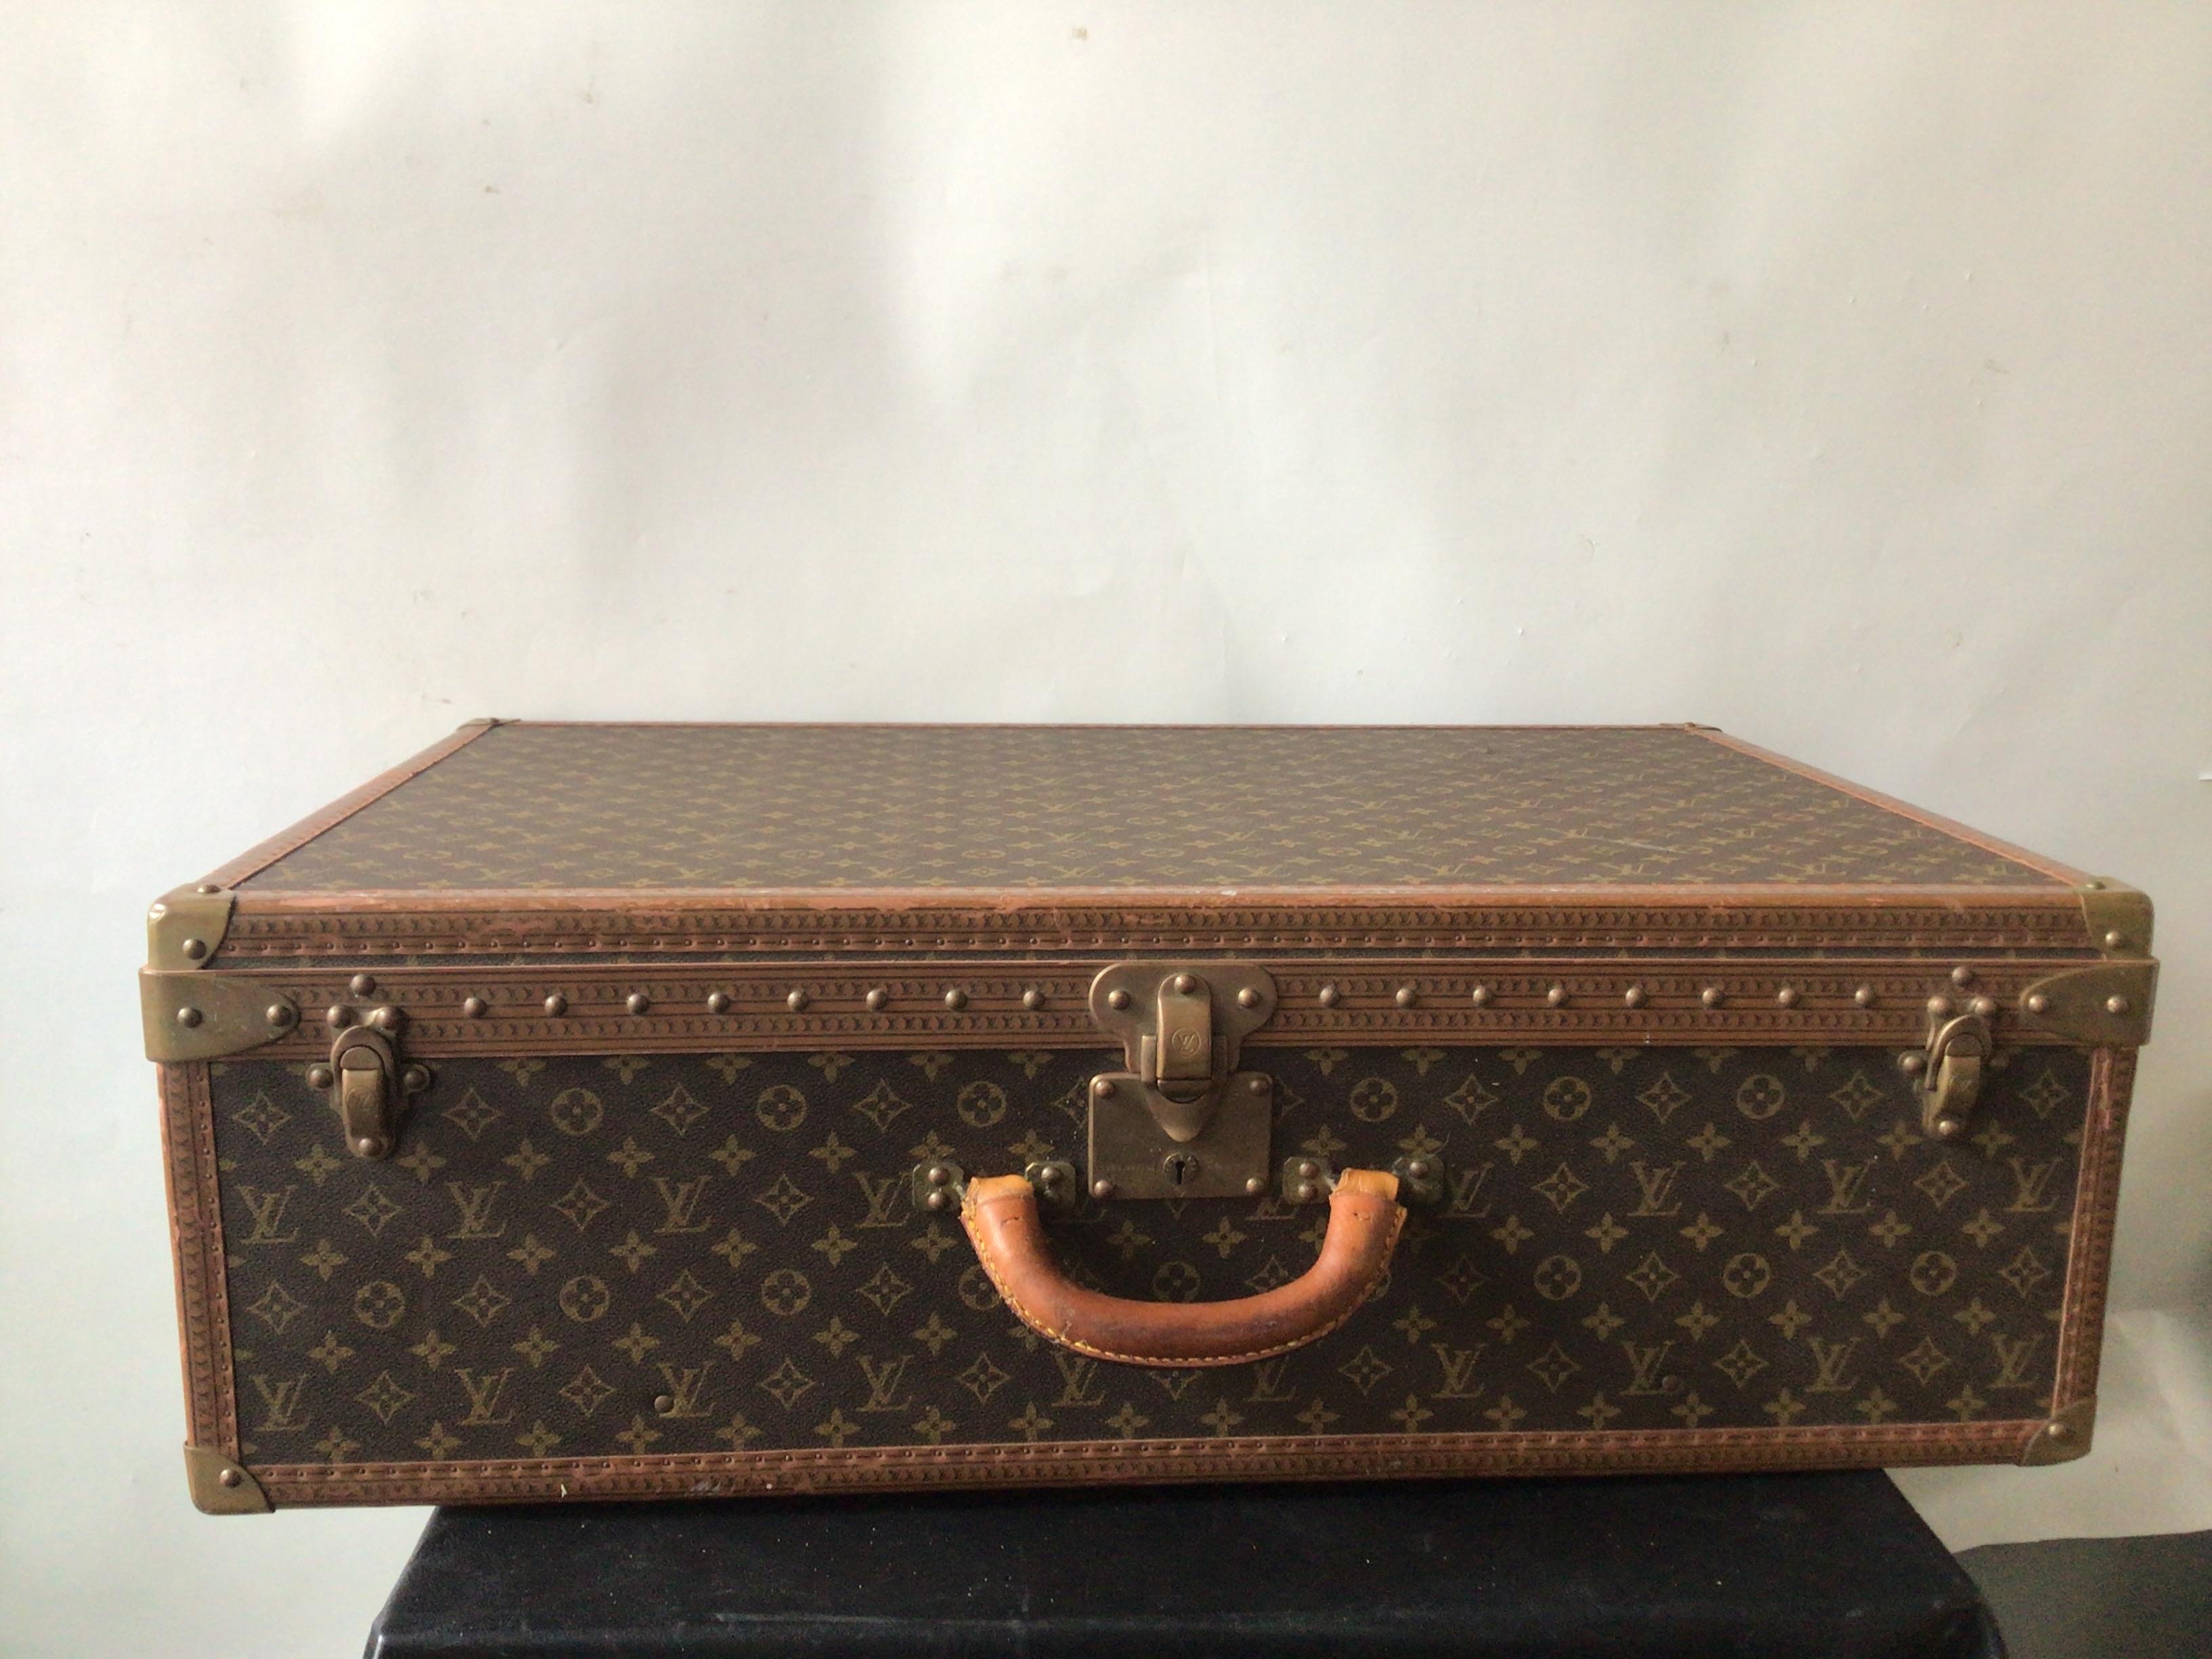 1980s Louis Vuitton monogram canvas trunk suitcase.